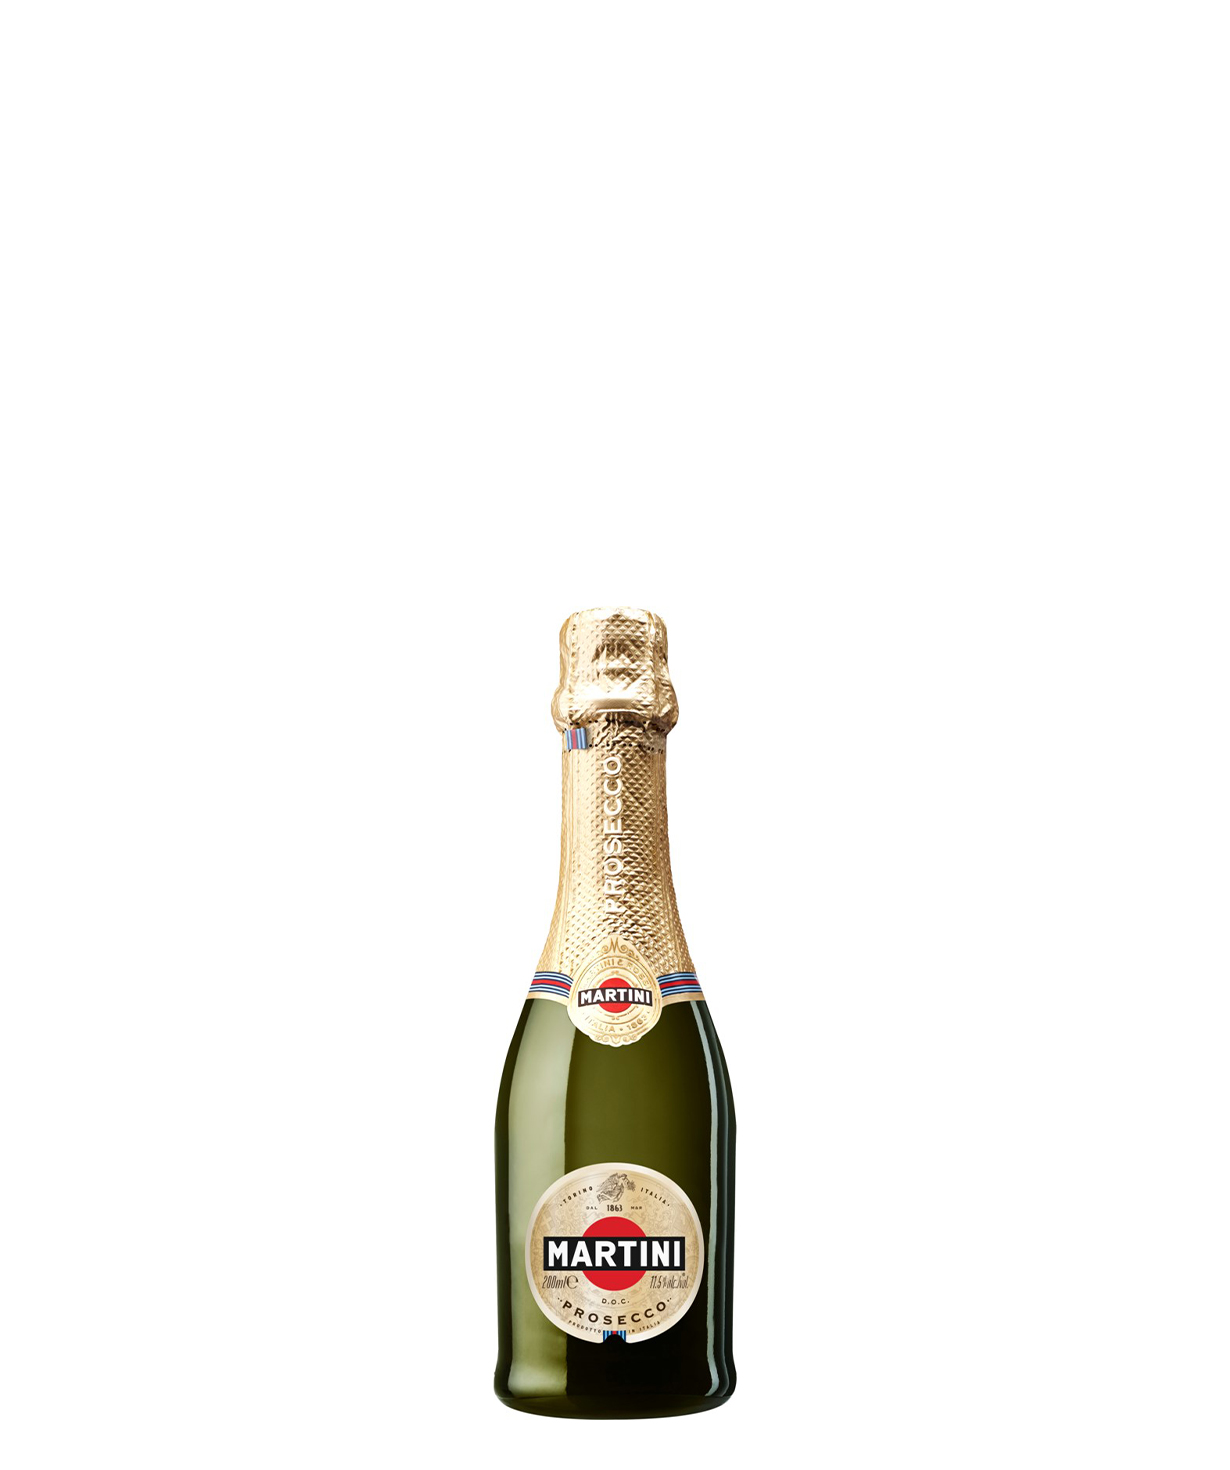 Շամպայն Martini Prosecco 0.2լ